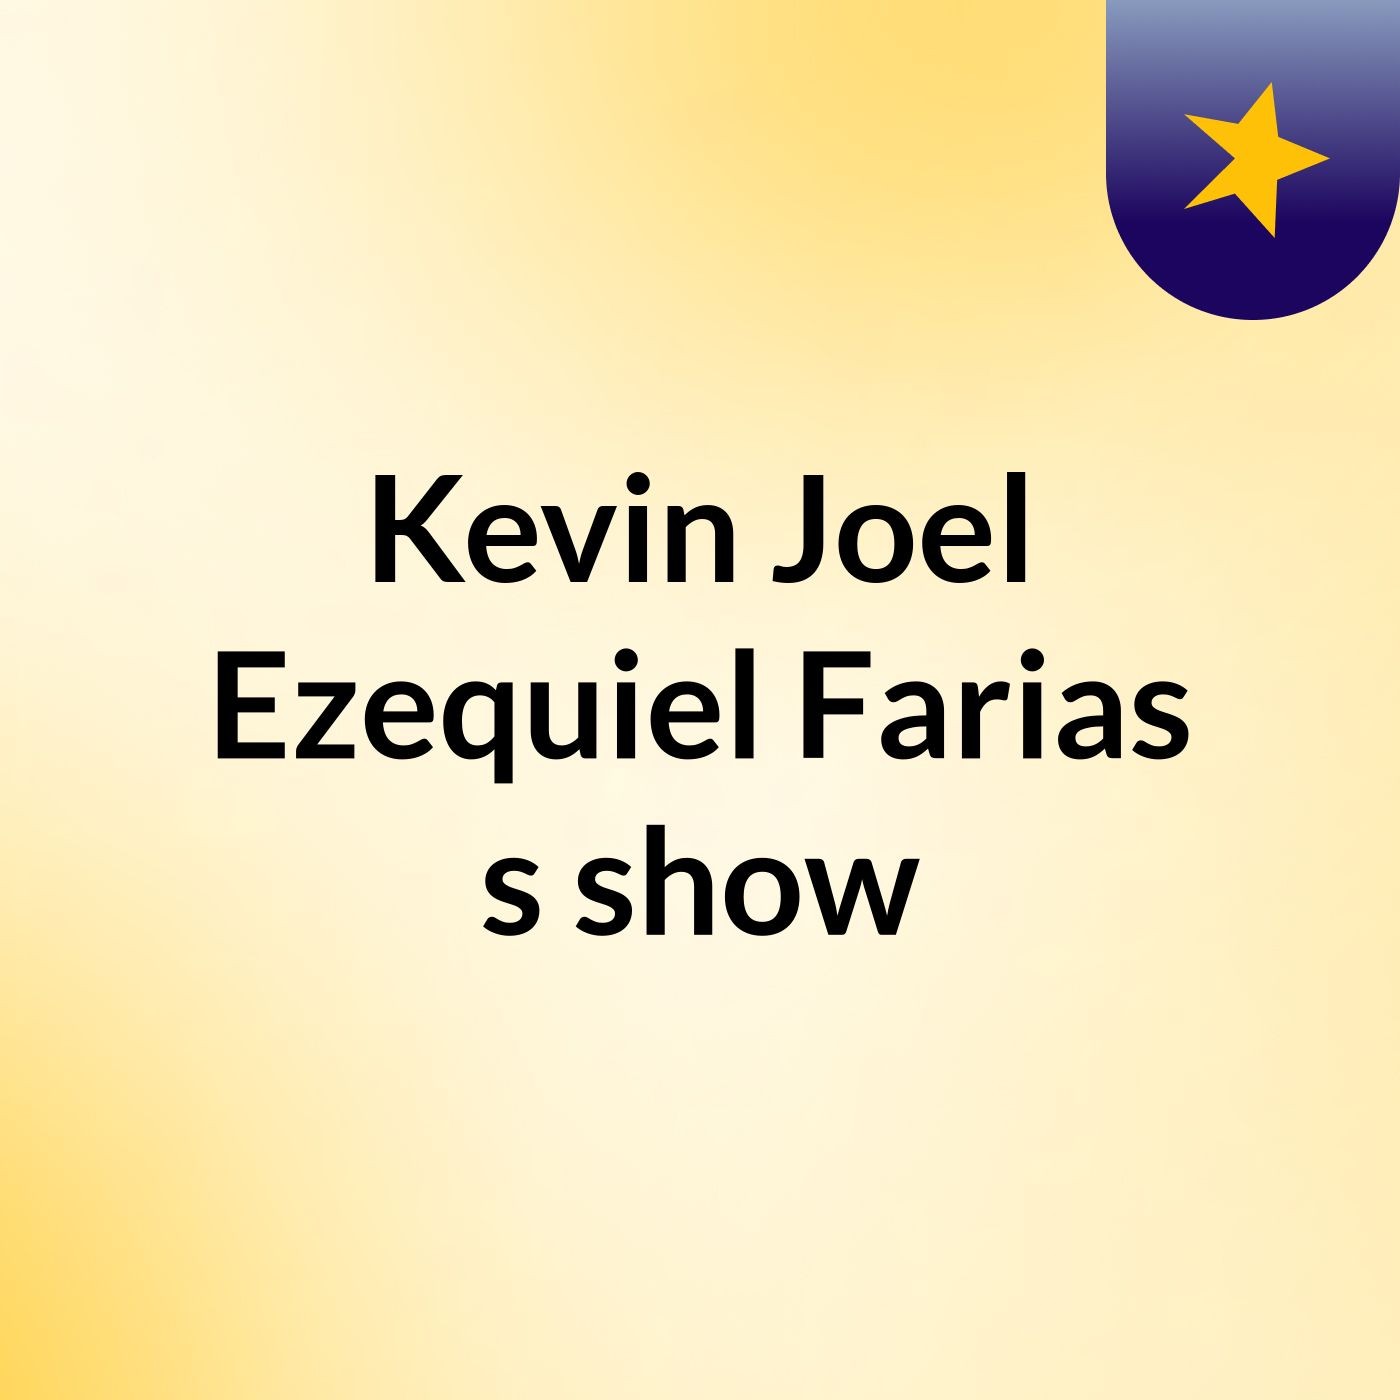 Kevin Joel Ezequiel Farias's show